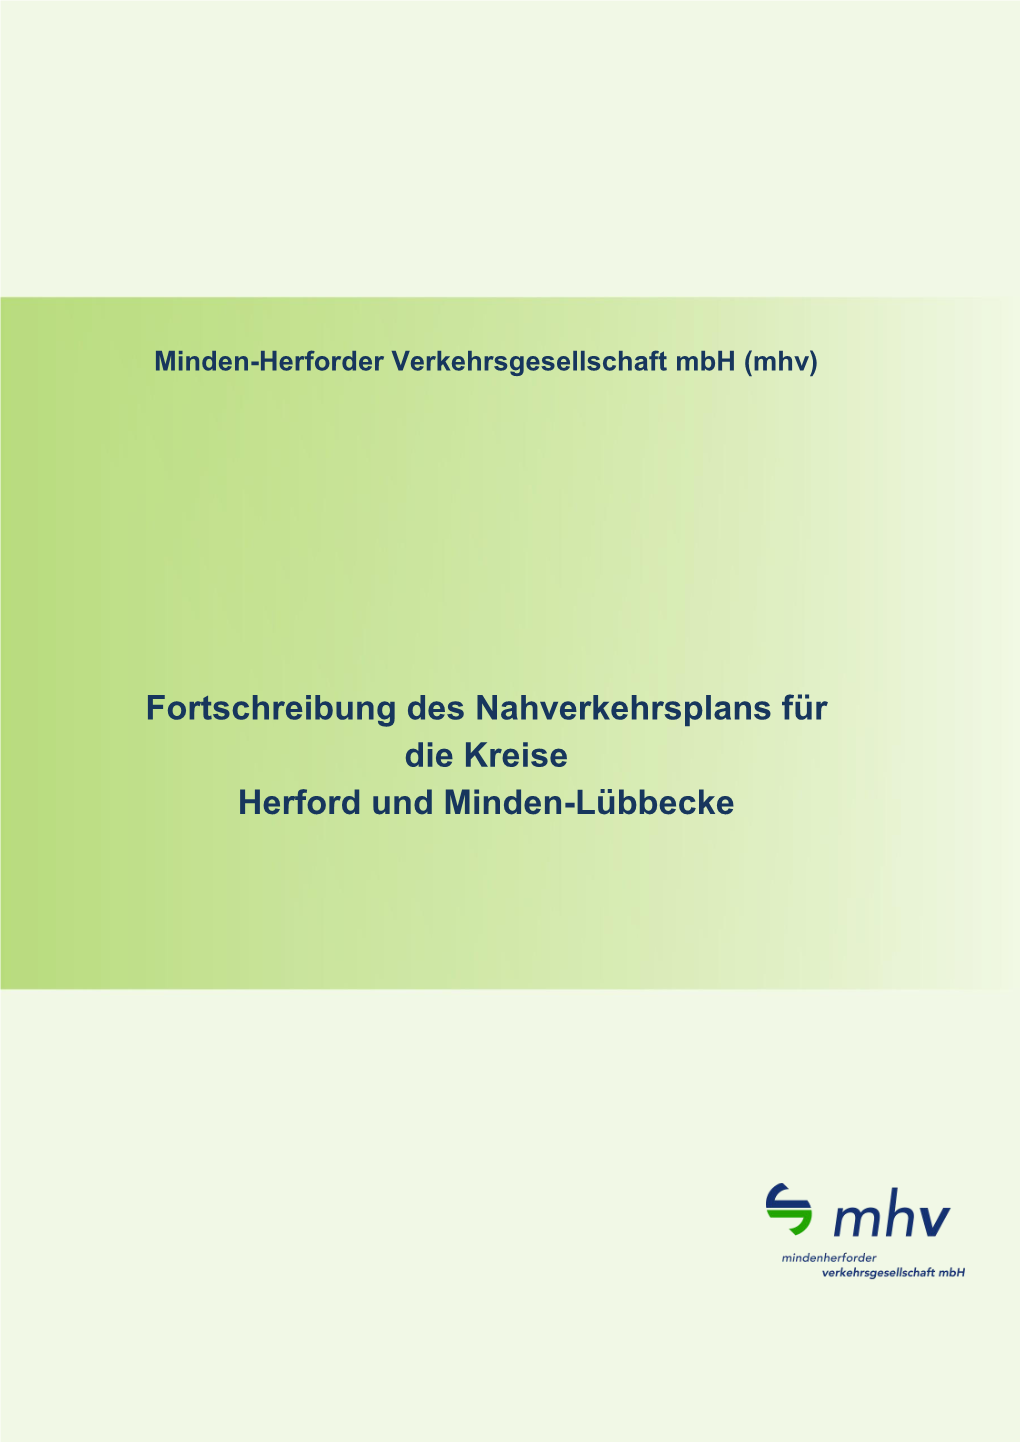 Fortschreibung Des Nahverkehrsplans Für Die Kreise Herford Und Minden-Lübbecke